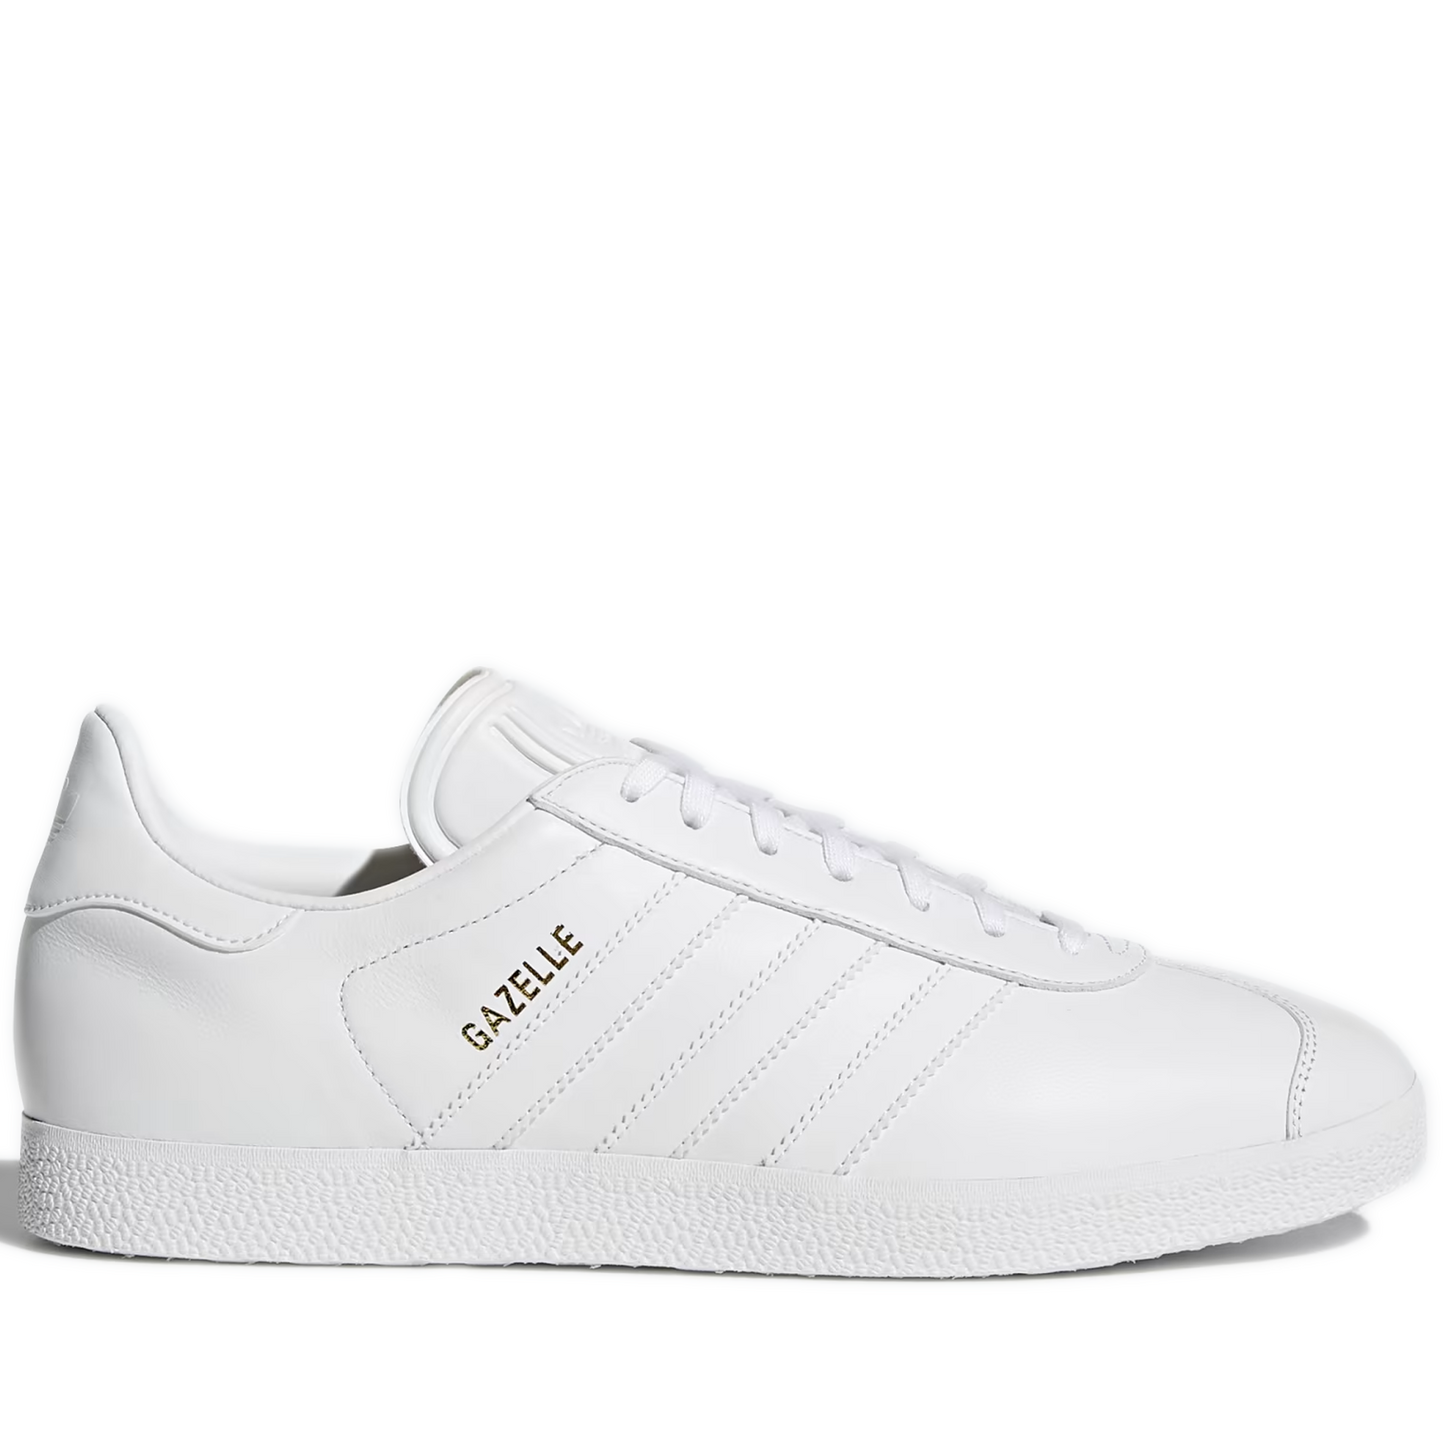 Men's Adidas Gazelle Shoes - All White